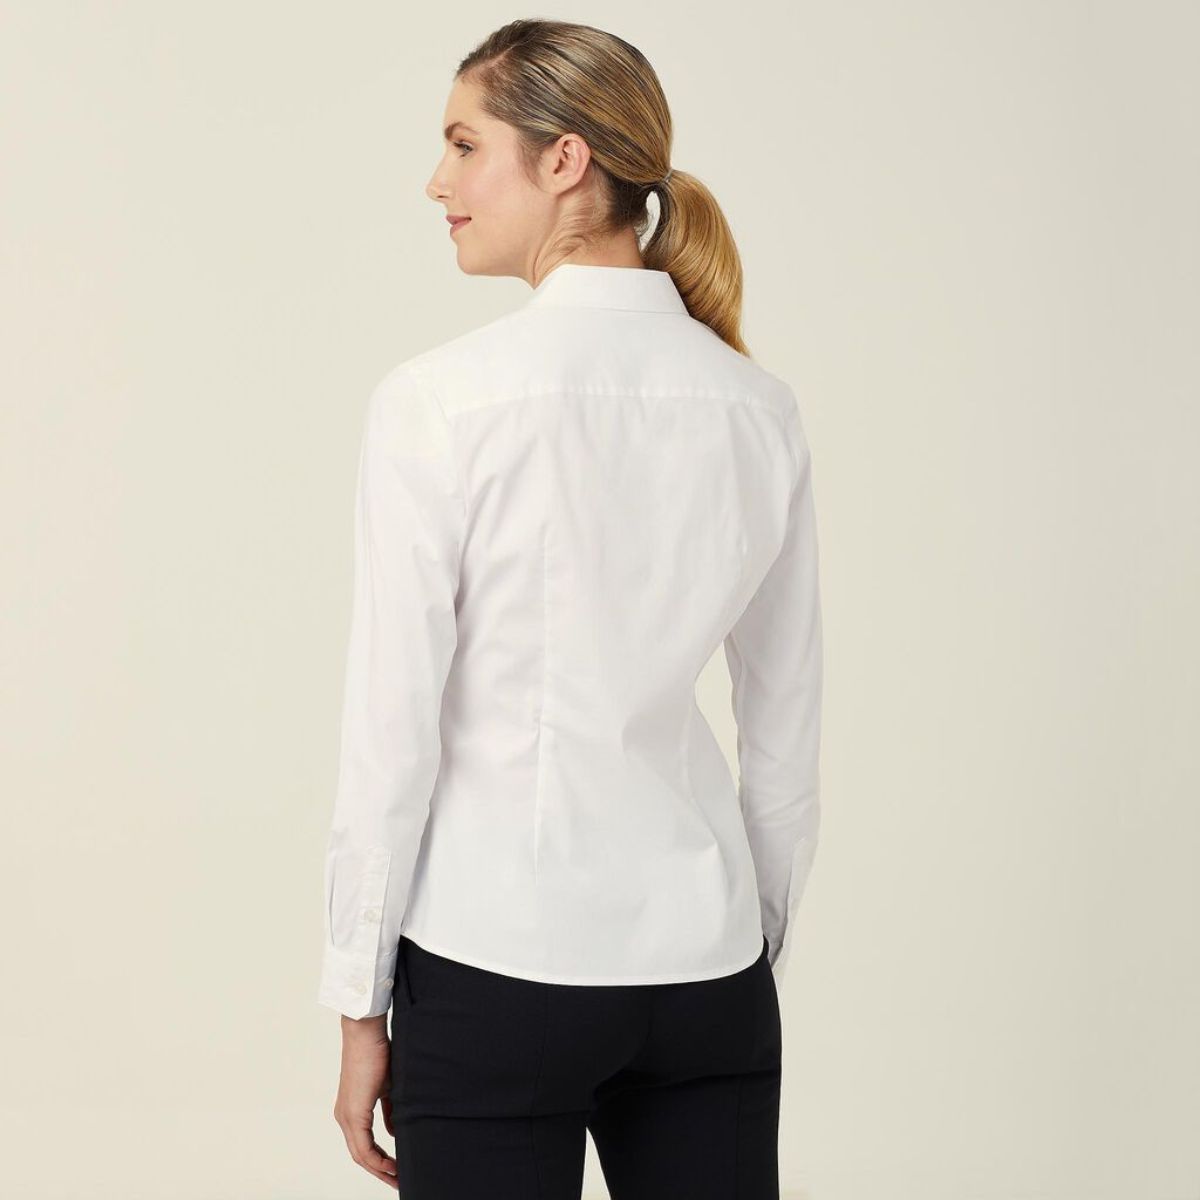 NNT Women's Avignon Long Sleeve Slim Shirt CATUKU